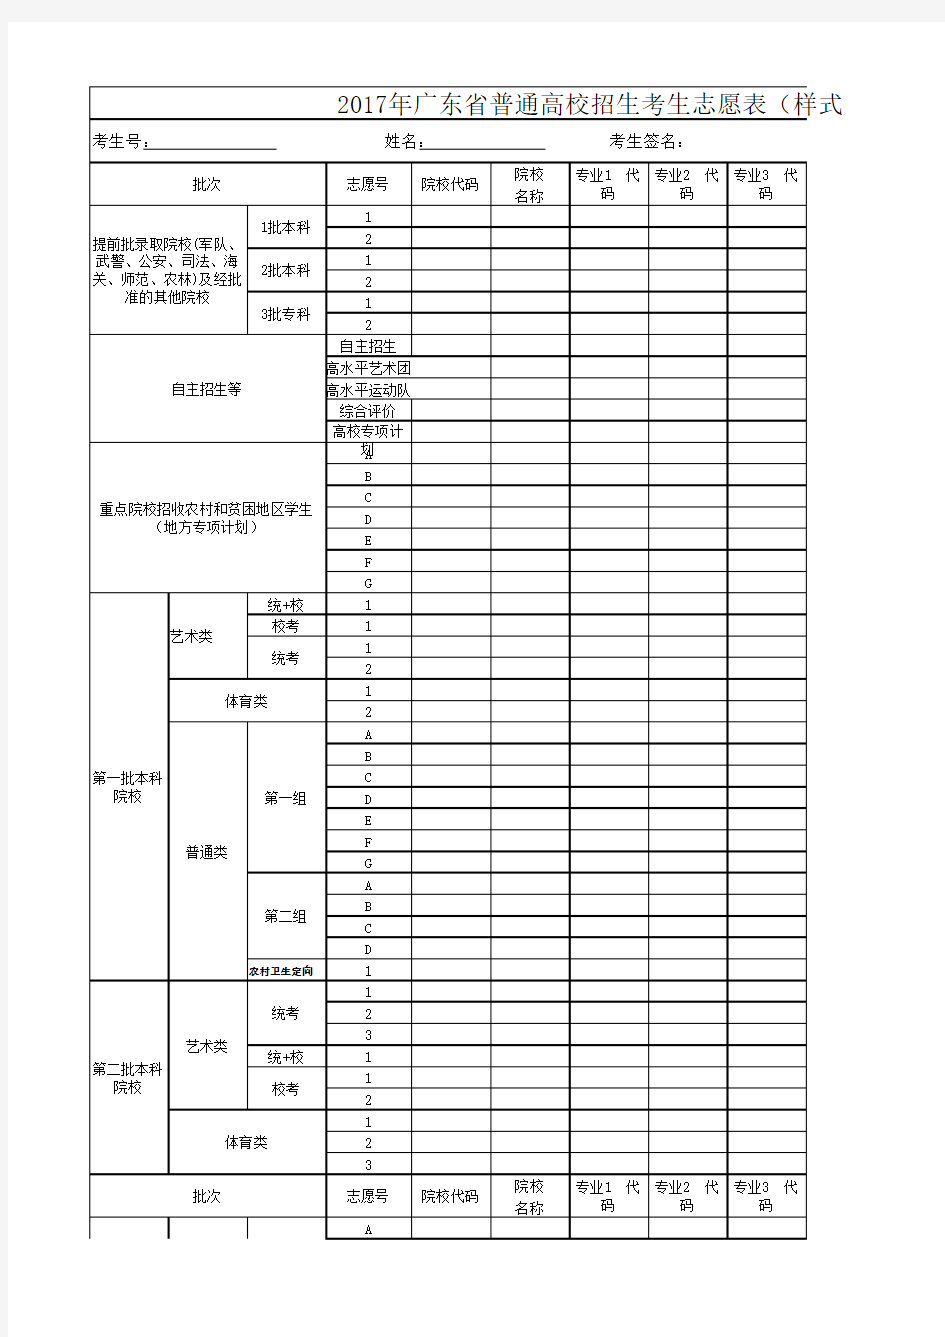 2017年广东省普通高校招生考生志愿表(样式)